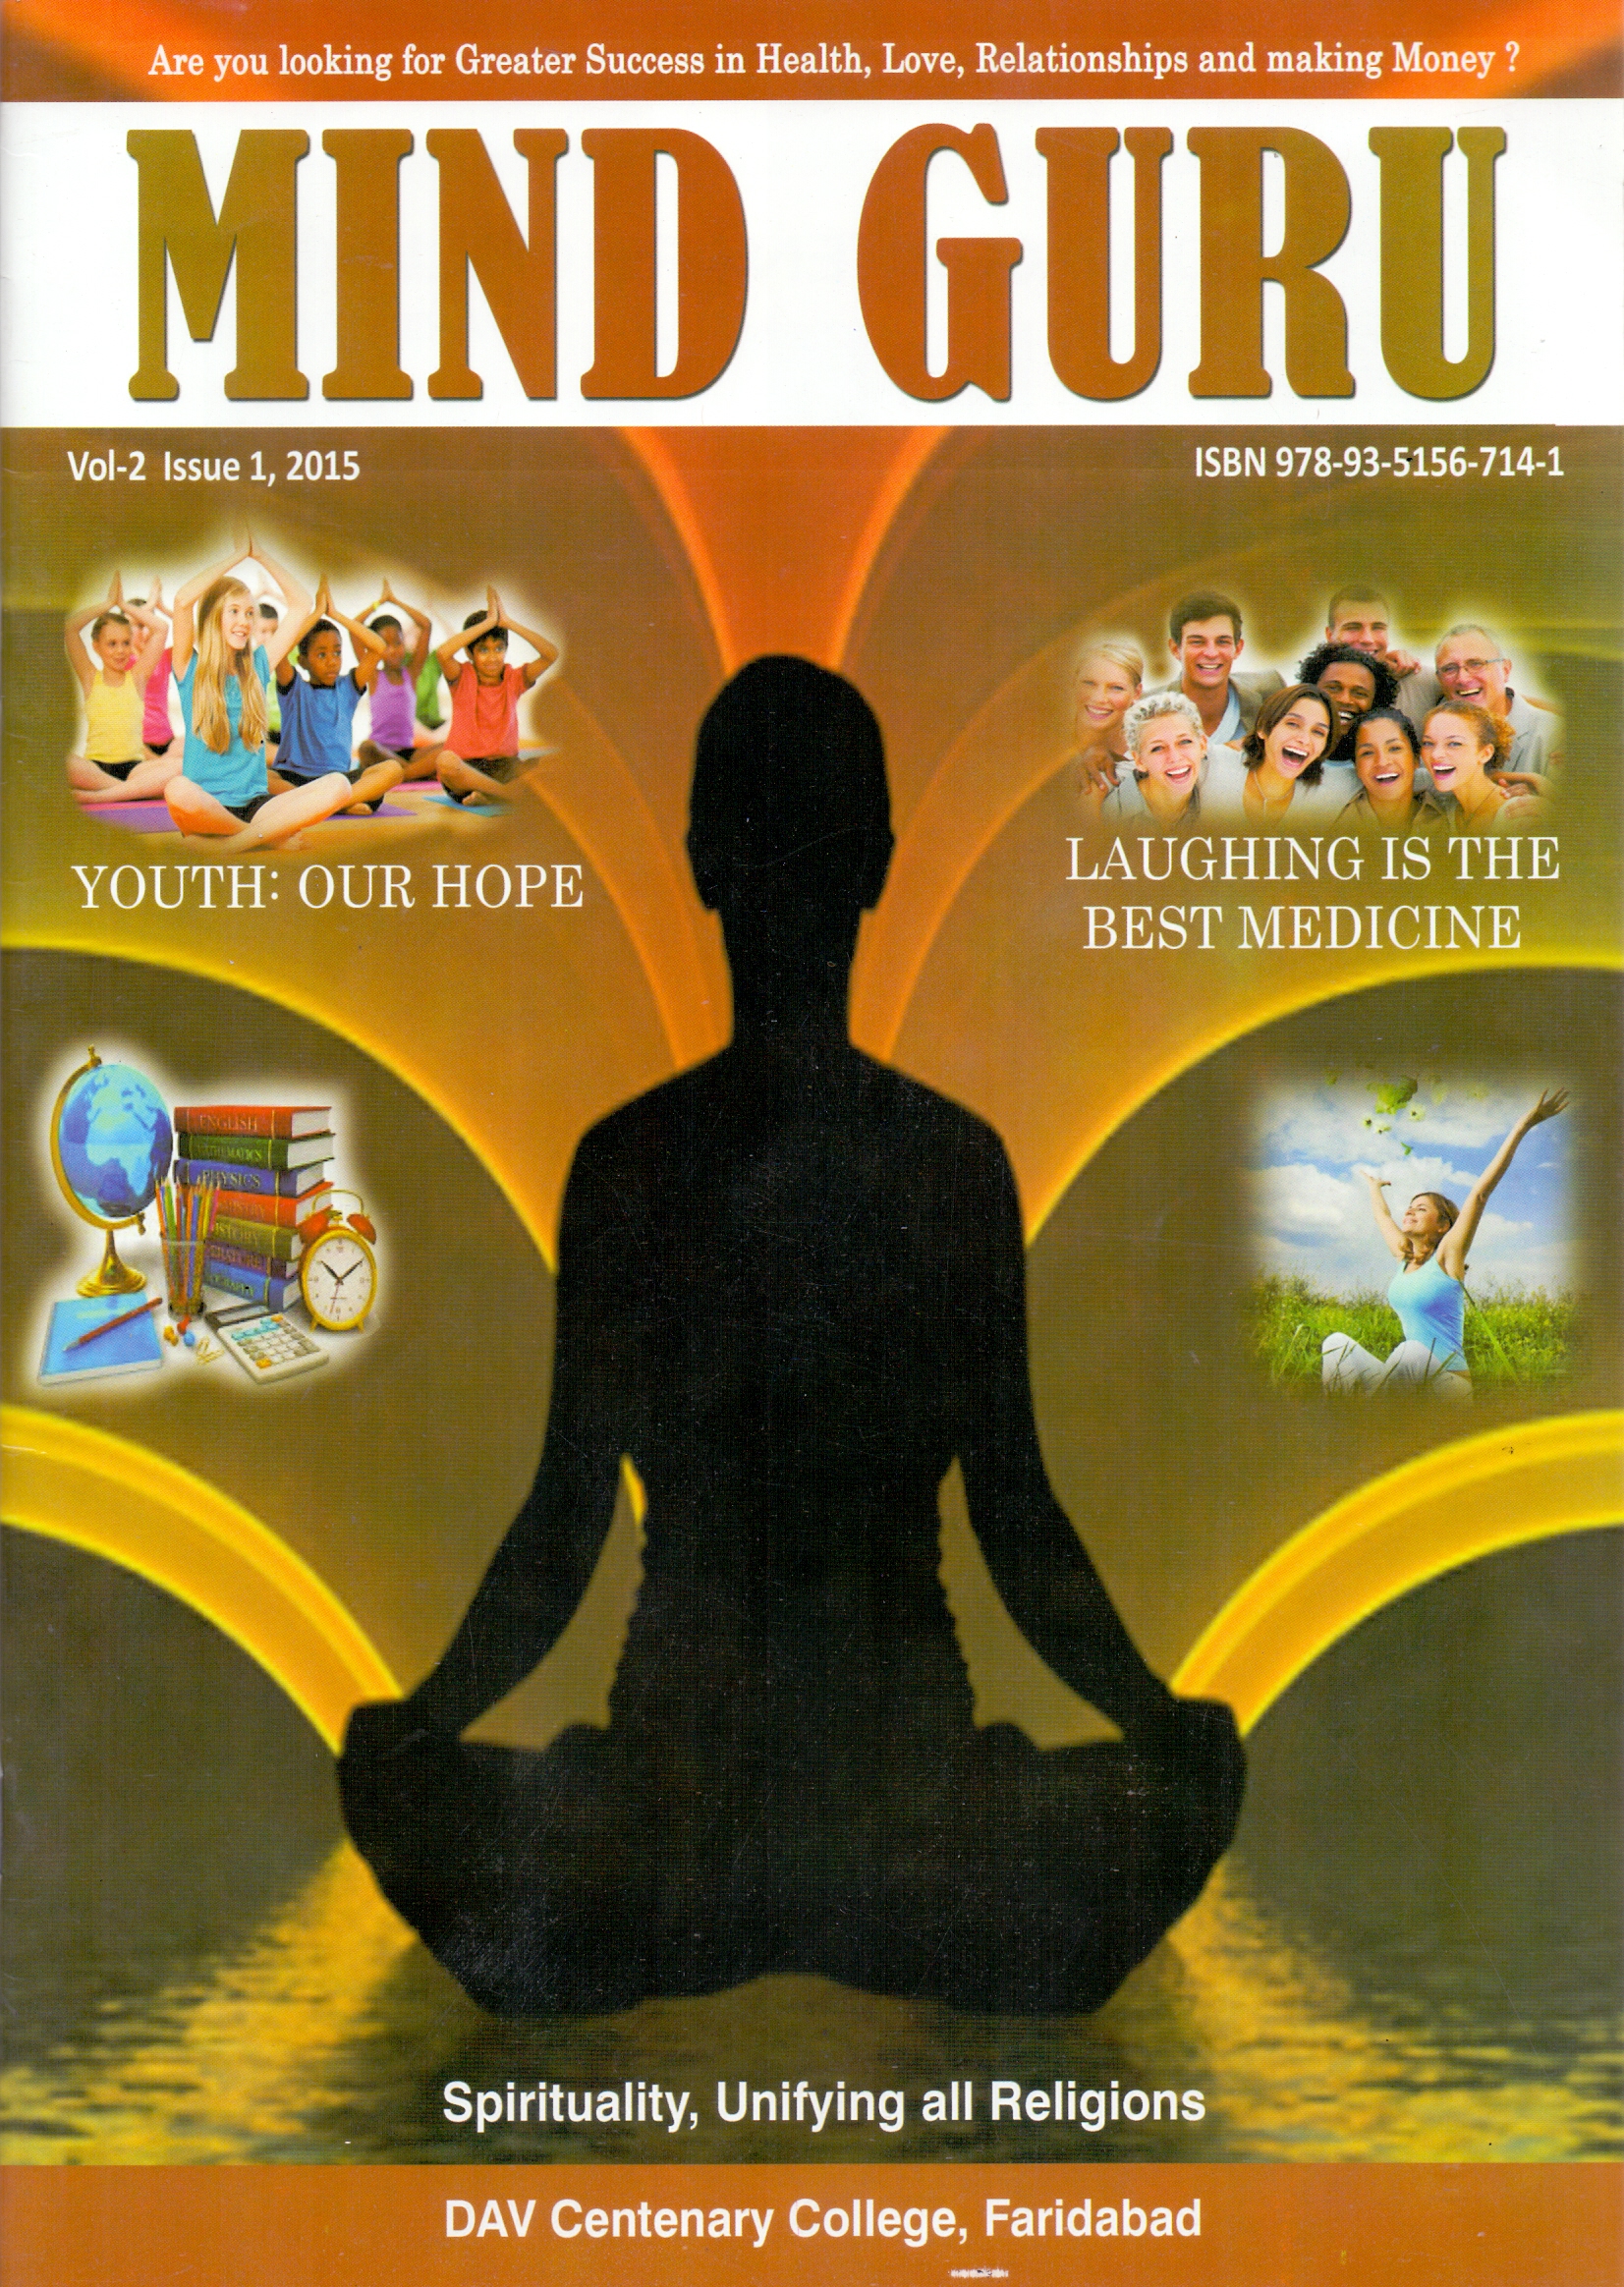 About "Mind Guru Magazine"